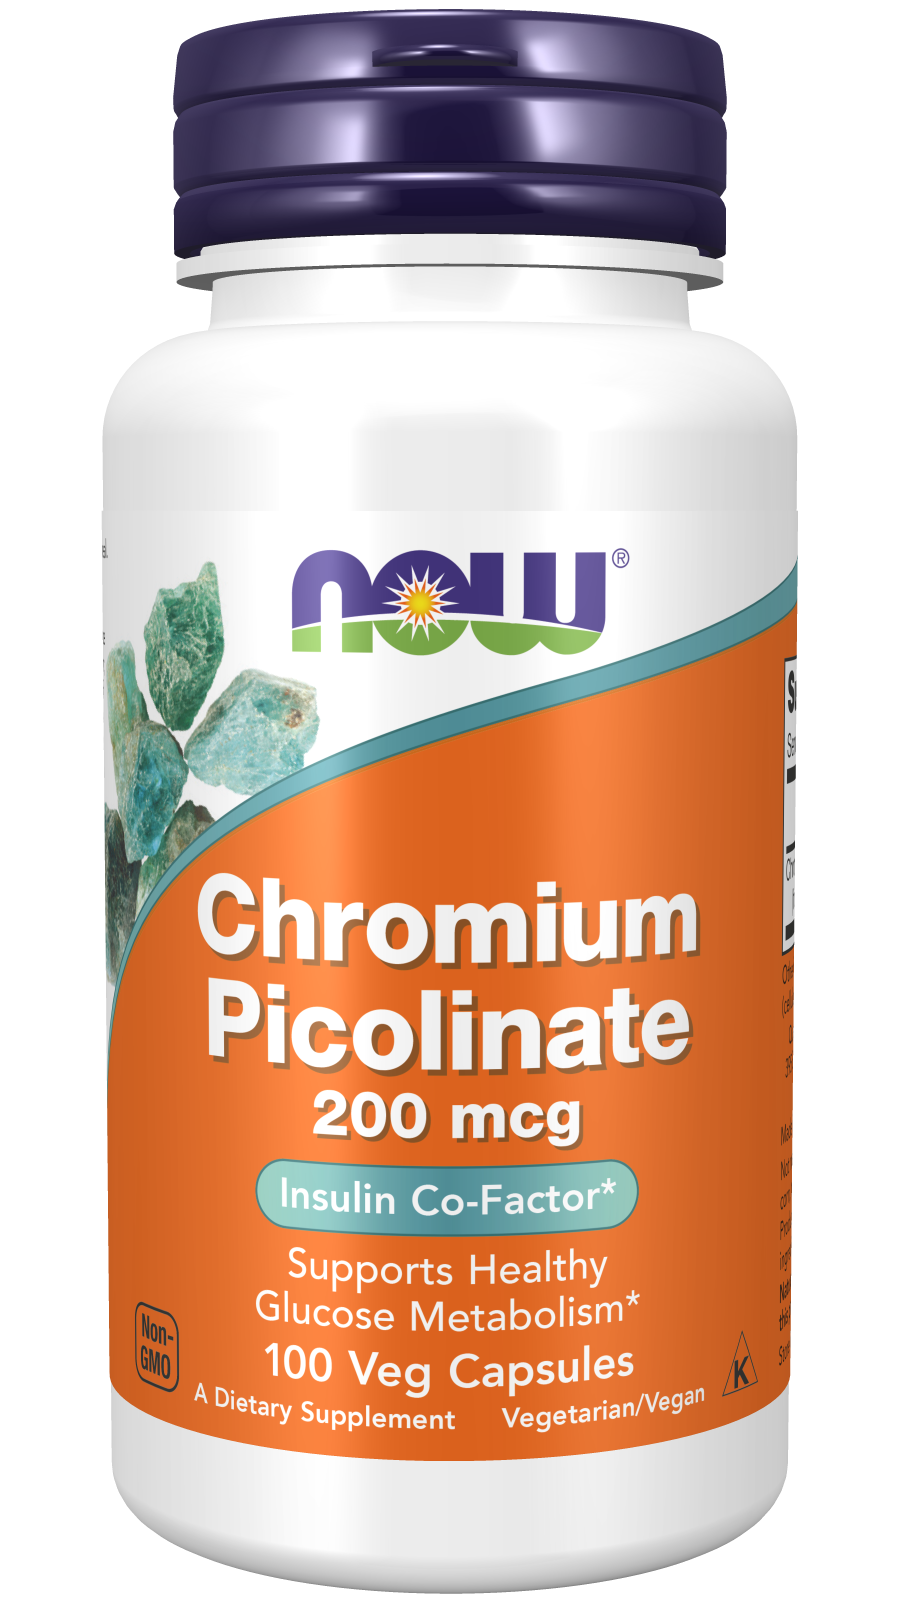 Chromium Picolinate 200 mcg - 100 Veg Capsules Bottle Front